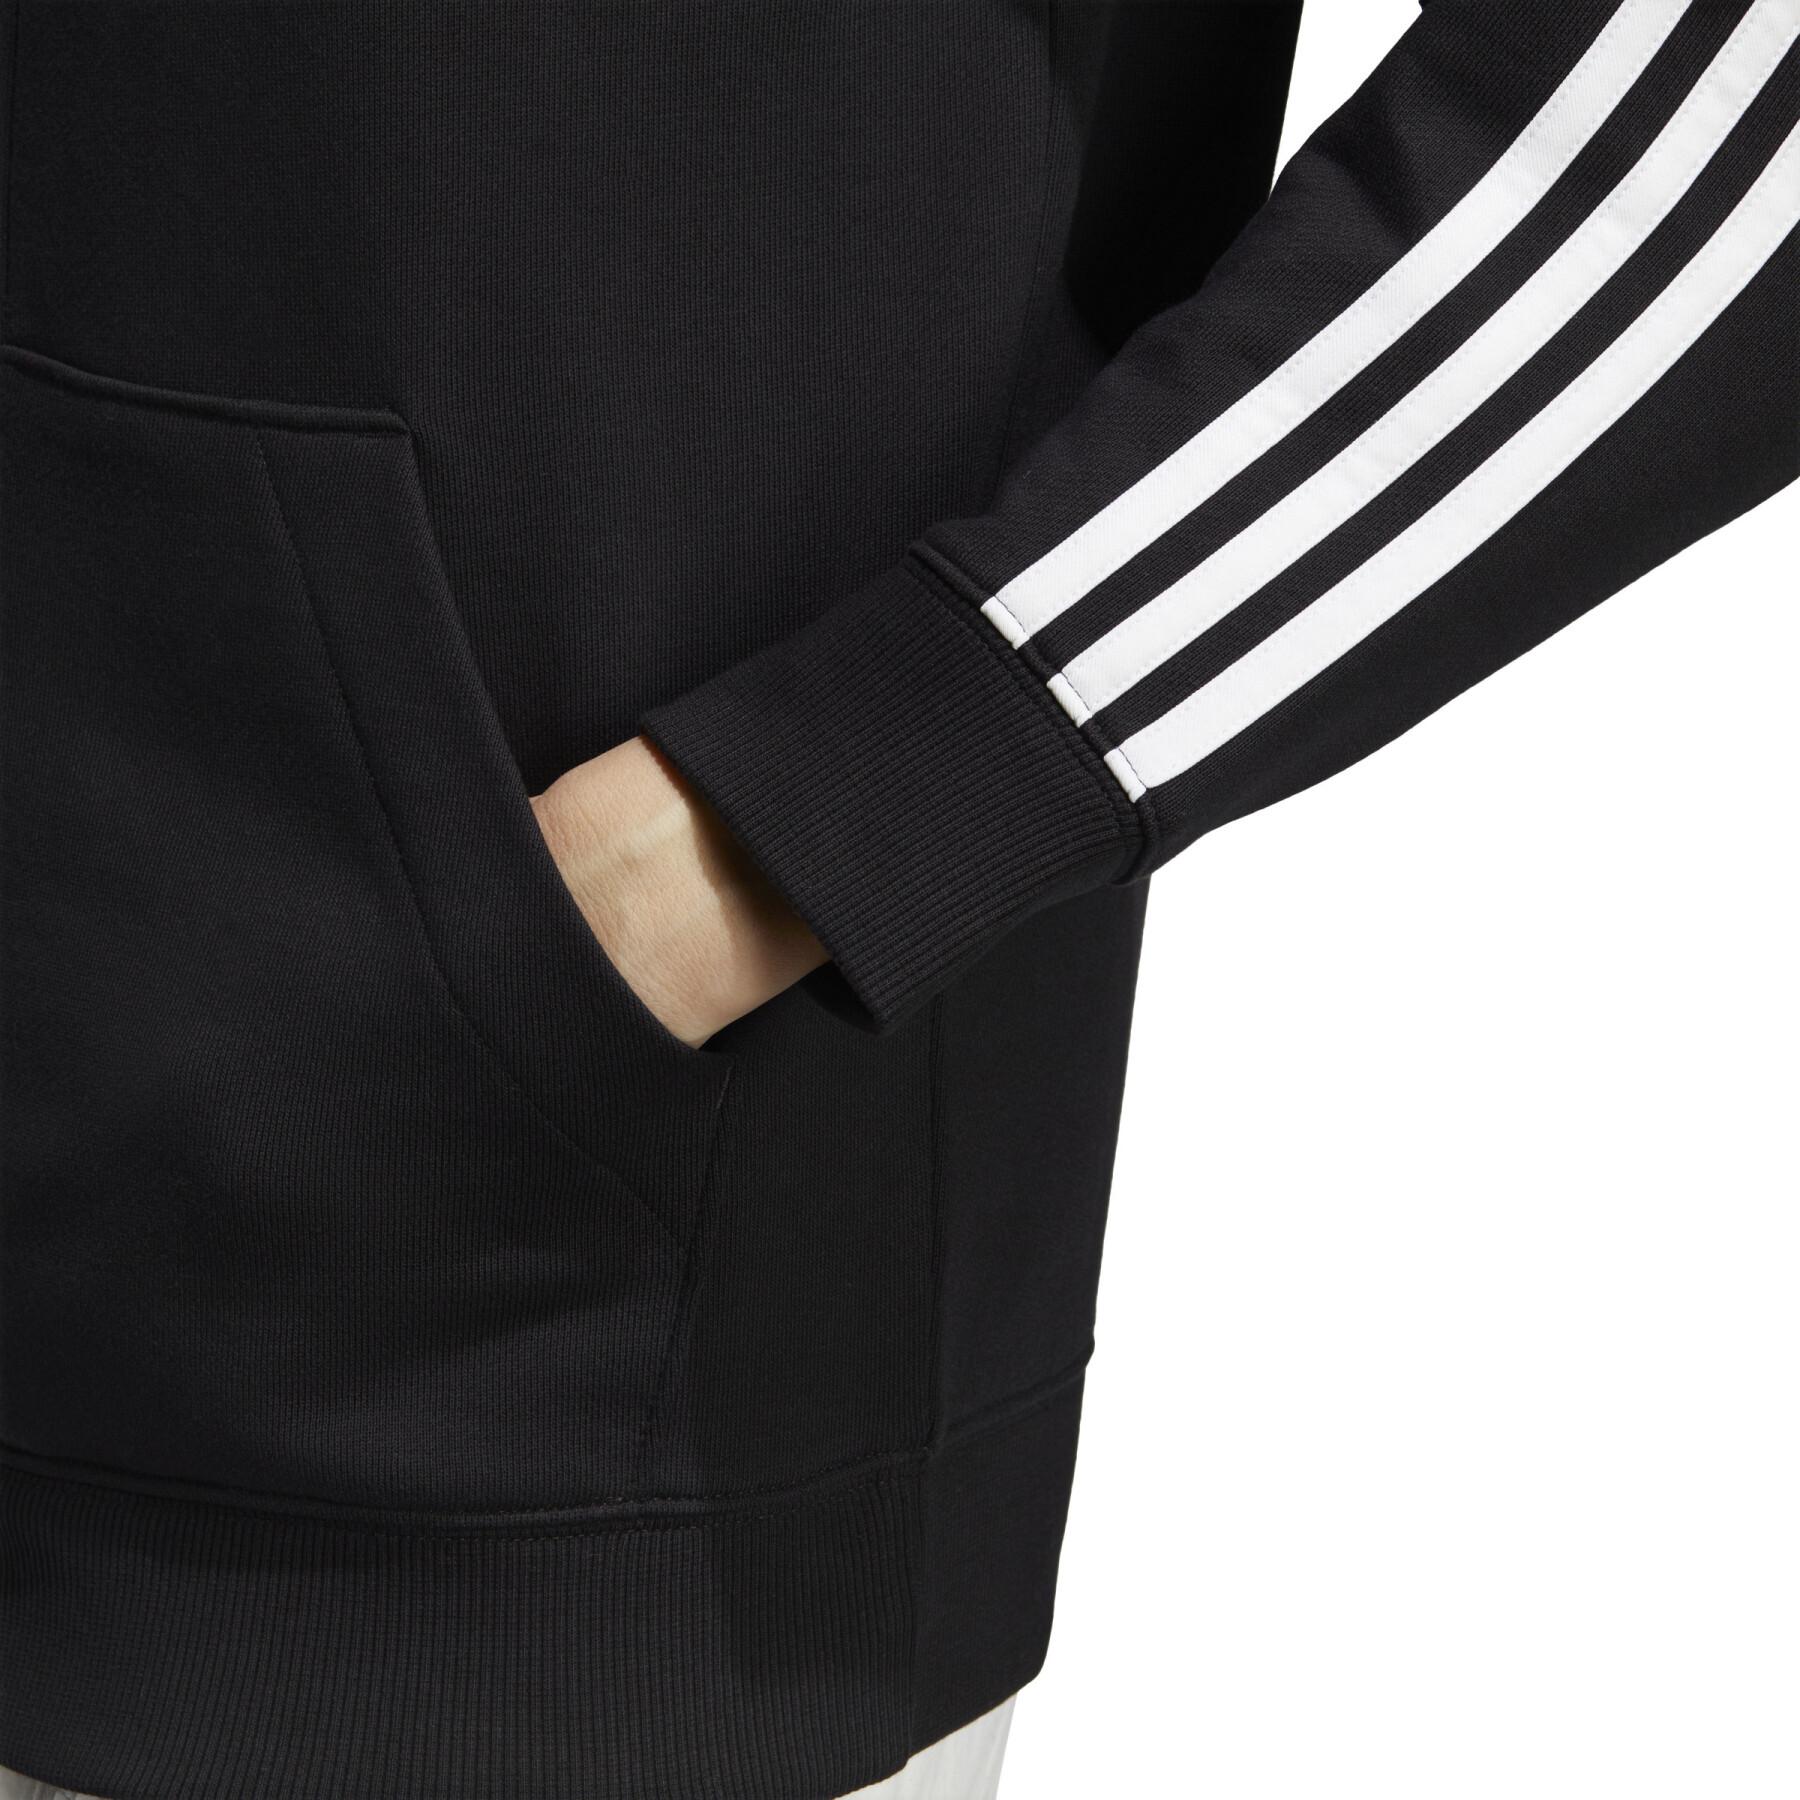 Sweatshirt felpa con cappuccio in pile regular full zip donna adidas Essentials 3-Stripes